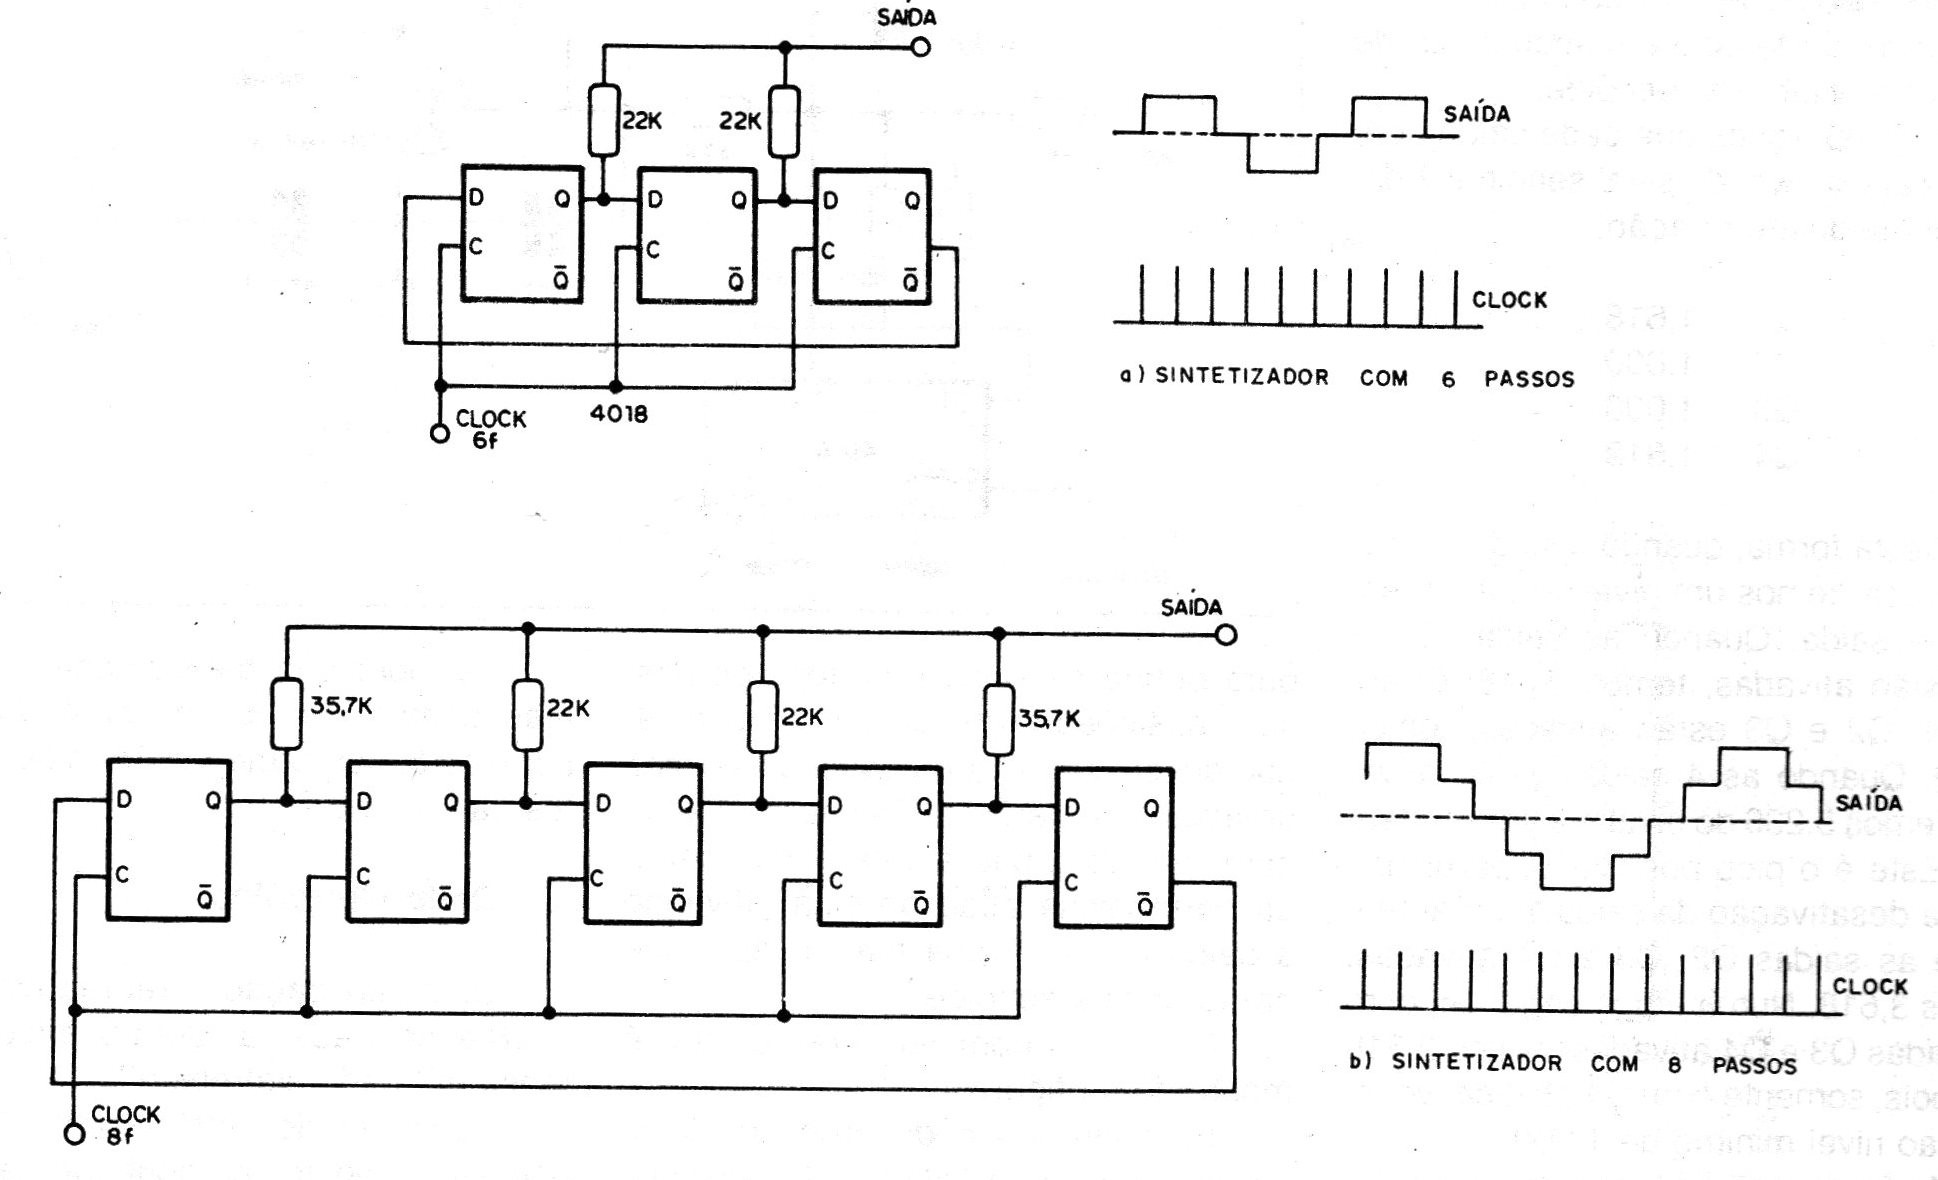    Figura 8 – Outros sintetizadores
